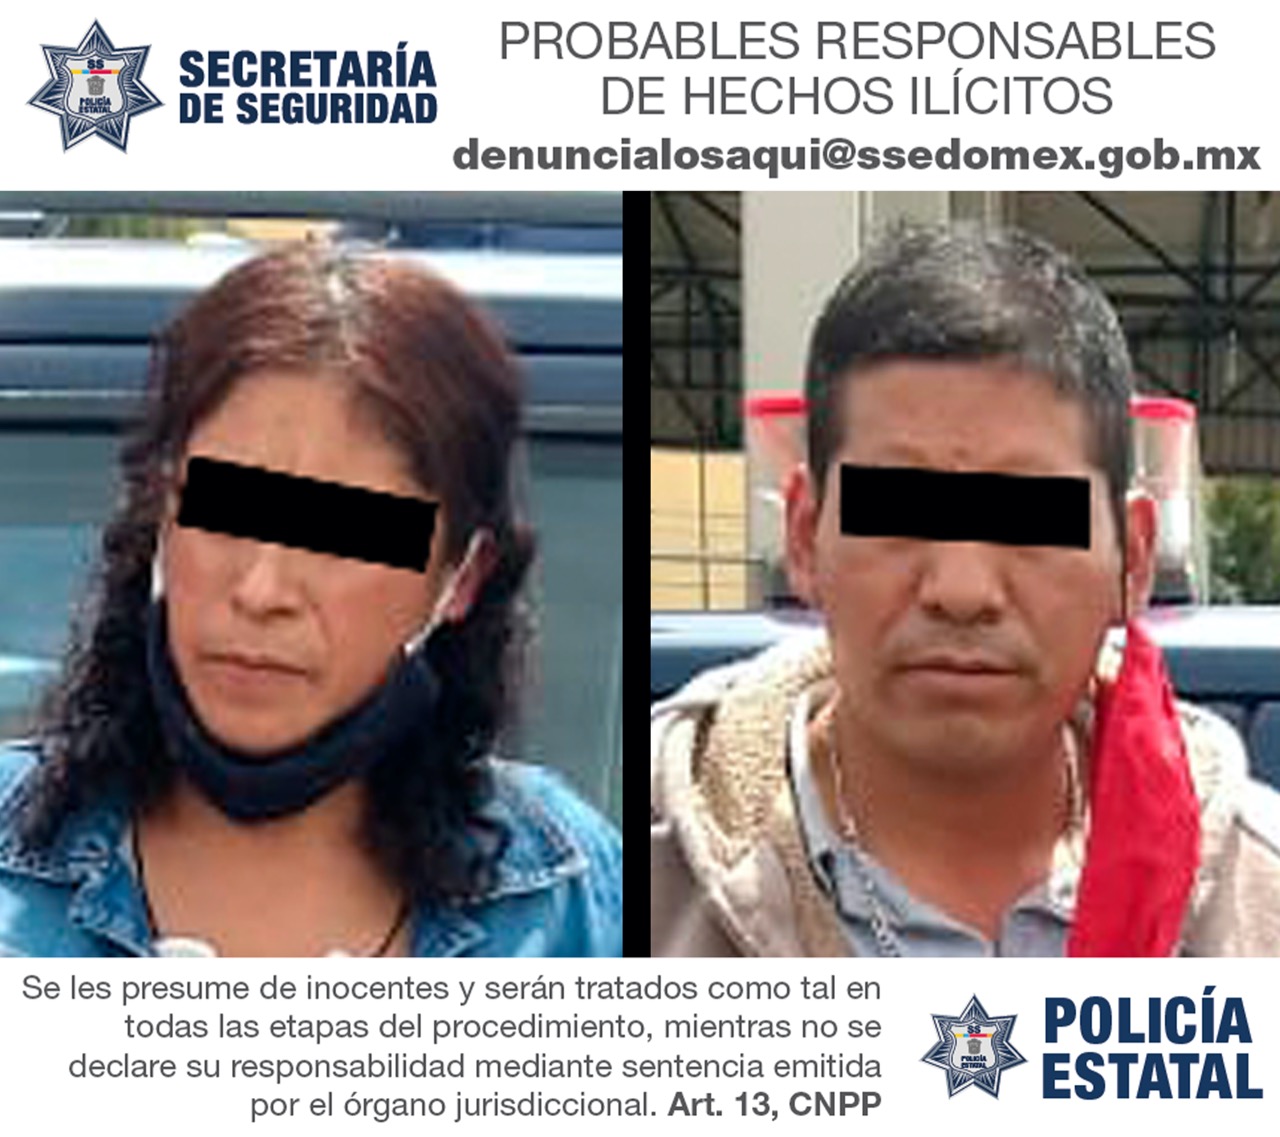 Detienen elementos de la secretaría de seguridad a dos probables implicados en el delito de narcomenudeo en la central de abastos de la capital mexiquense